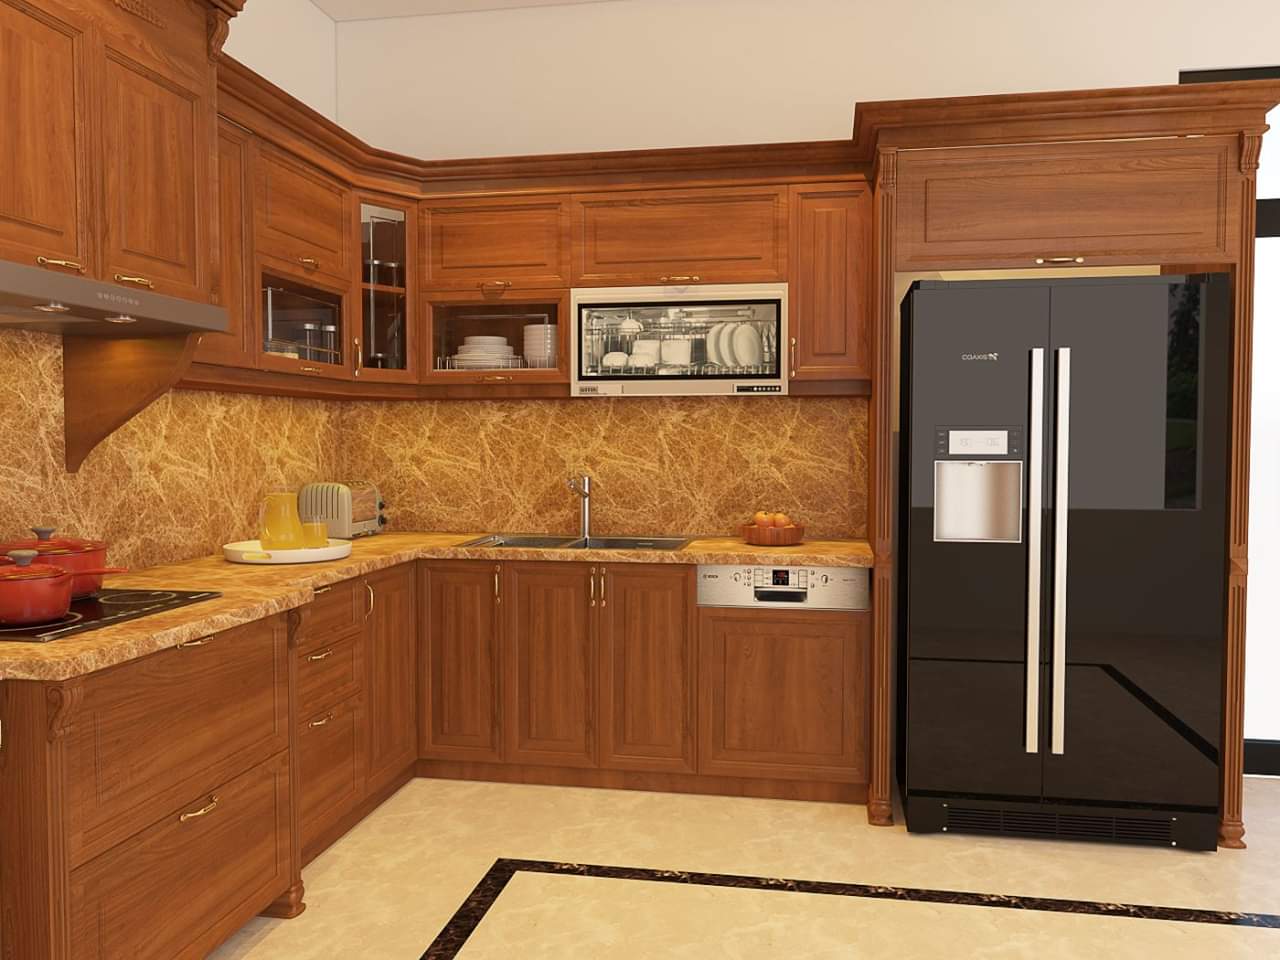 Tủ bếp gỗ Gõ đỏ là sự kết hợp tuyệt vời giữa tính năng và thiết kế đẹp mắt. Với chất liệu gỗ cao cấp và đường nét tinh tế, tủ bếp Gõ đỏ giúp không gian bếp trở nên ấm áp và sang trọng hơn bao giờ hết. Hãy xem ngay hình ảnh liên quan để tìm hiểu thêm chi tiết.